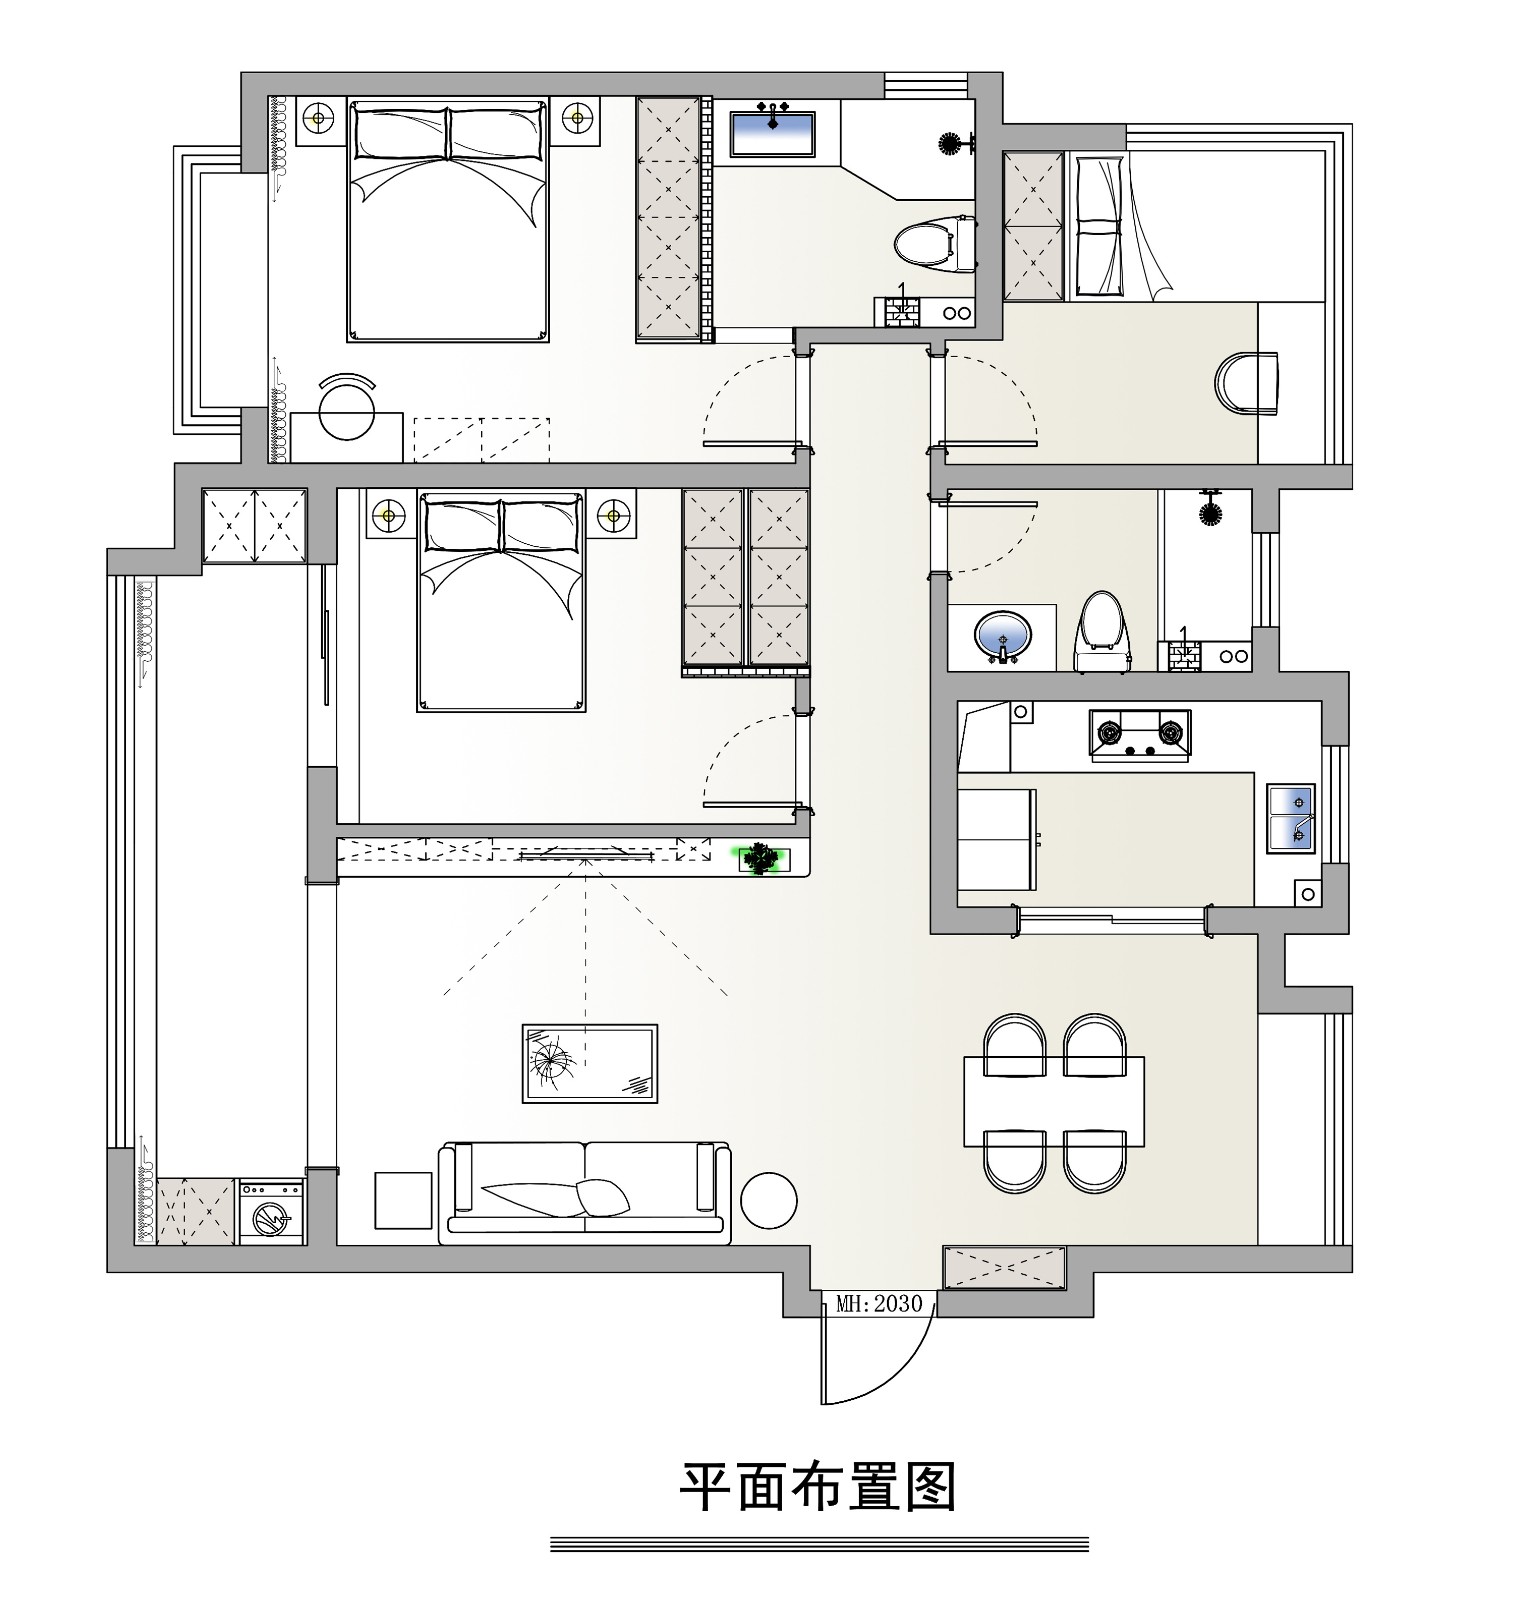 90现代两房装修效果图,诠释简约纯粹的生活美学装修案例效果图-美广网(图1)